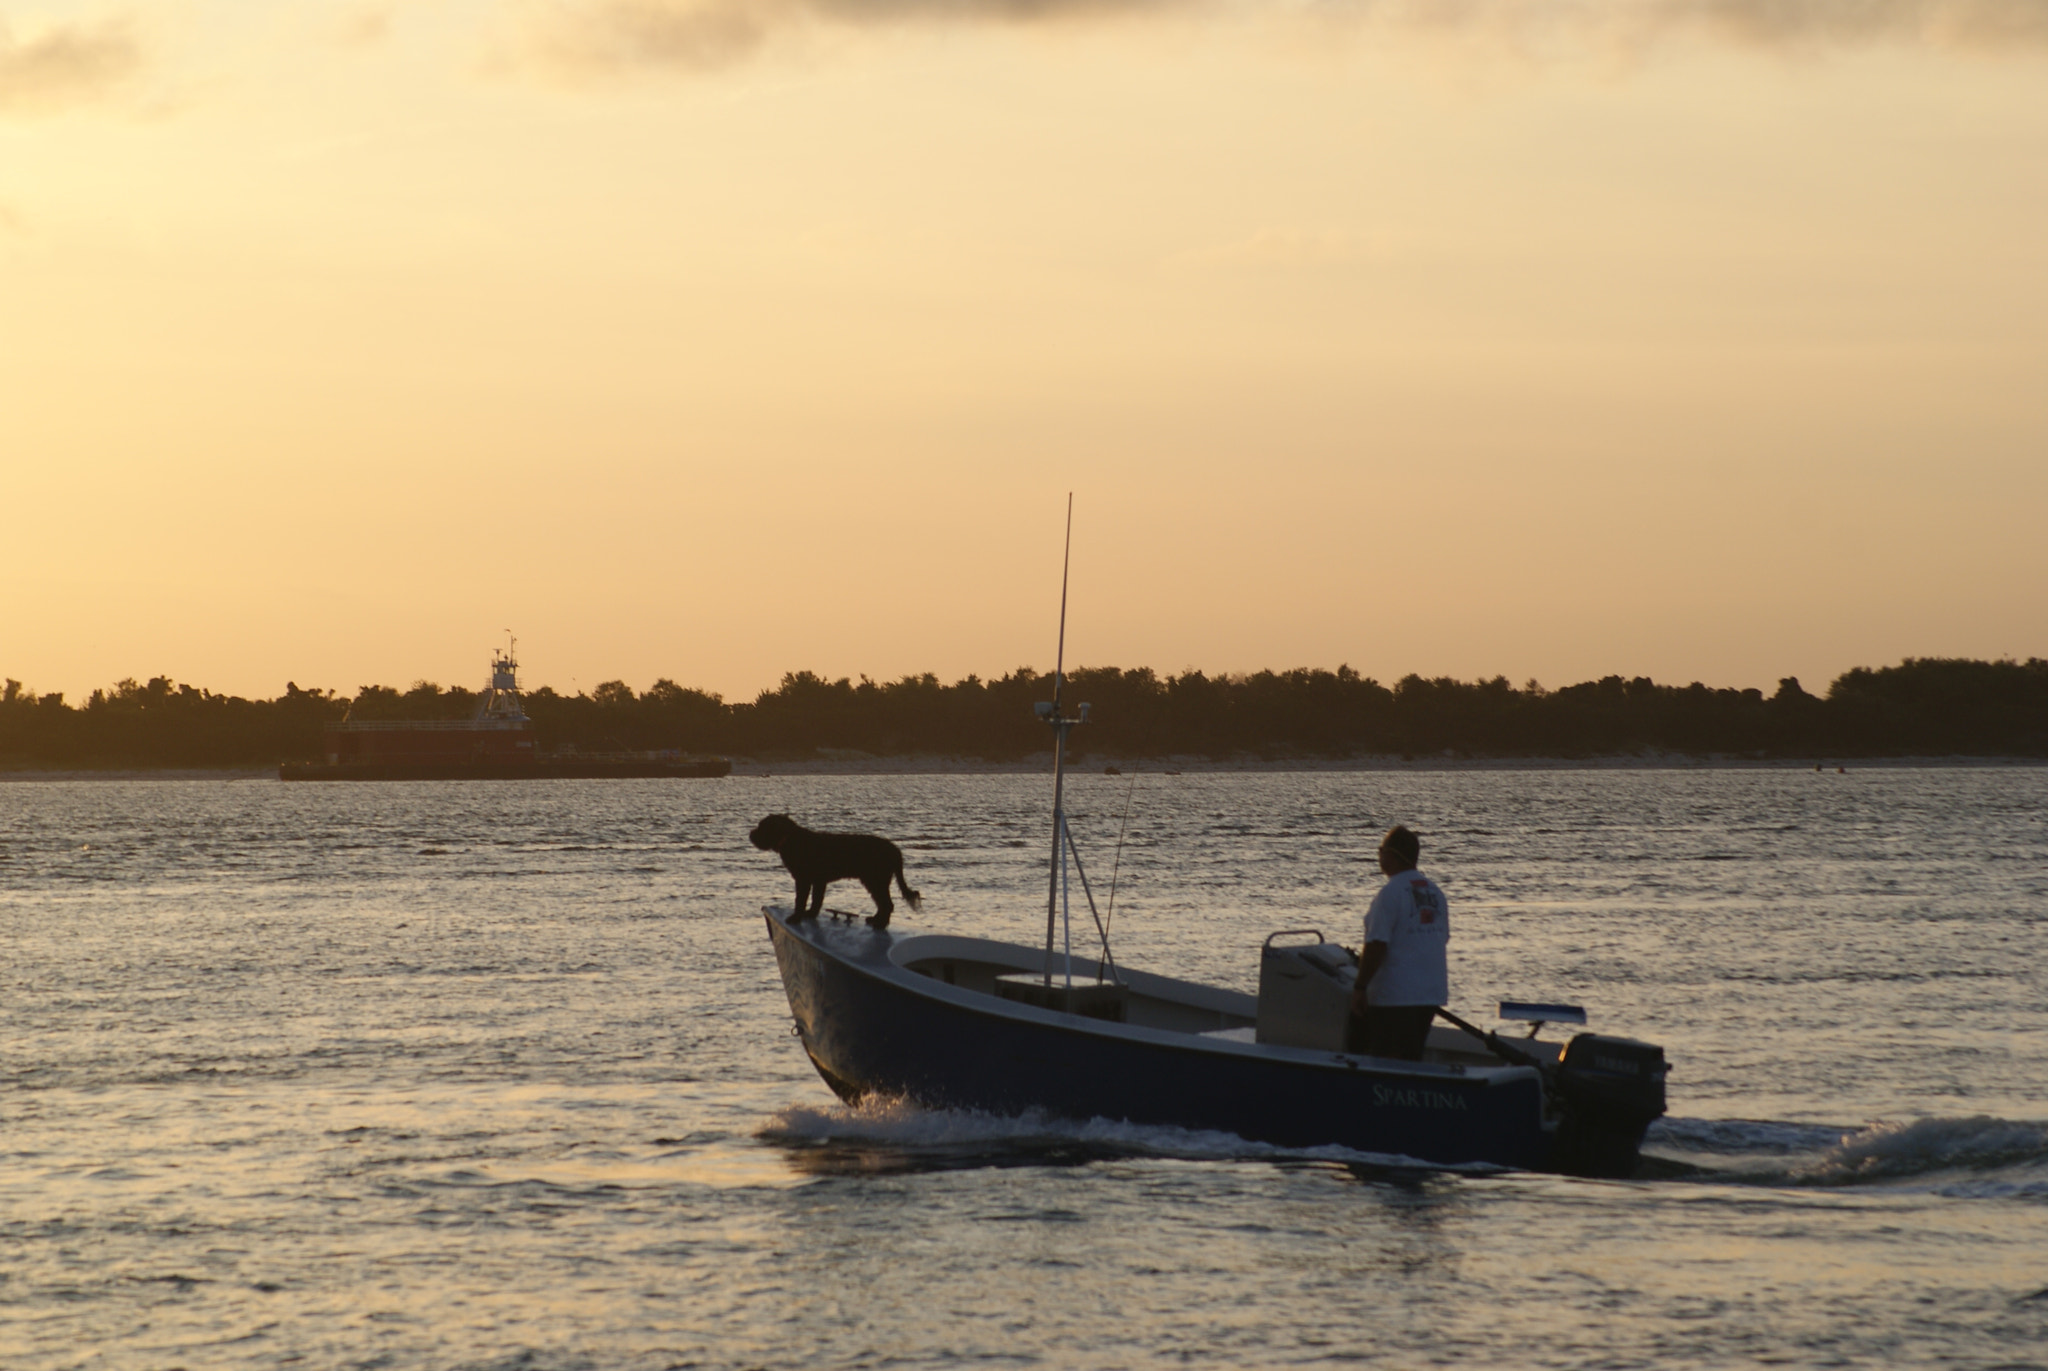 Sony Alpha DSLR-A200 sample photo. Boat dog photography